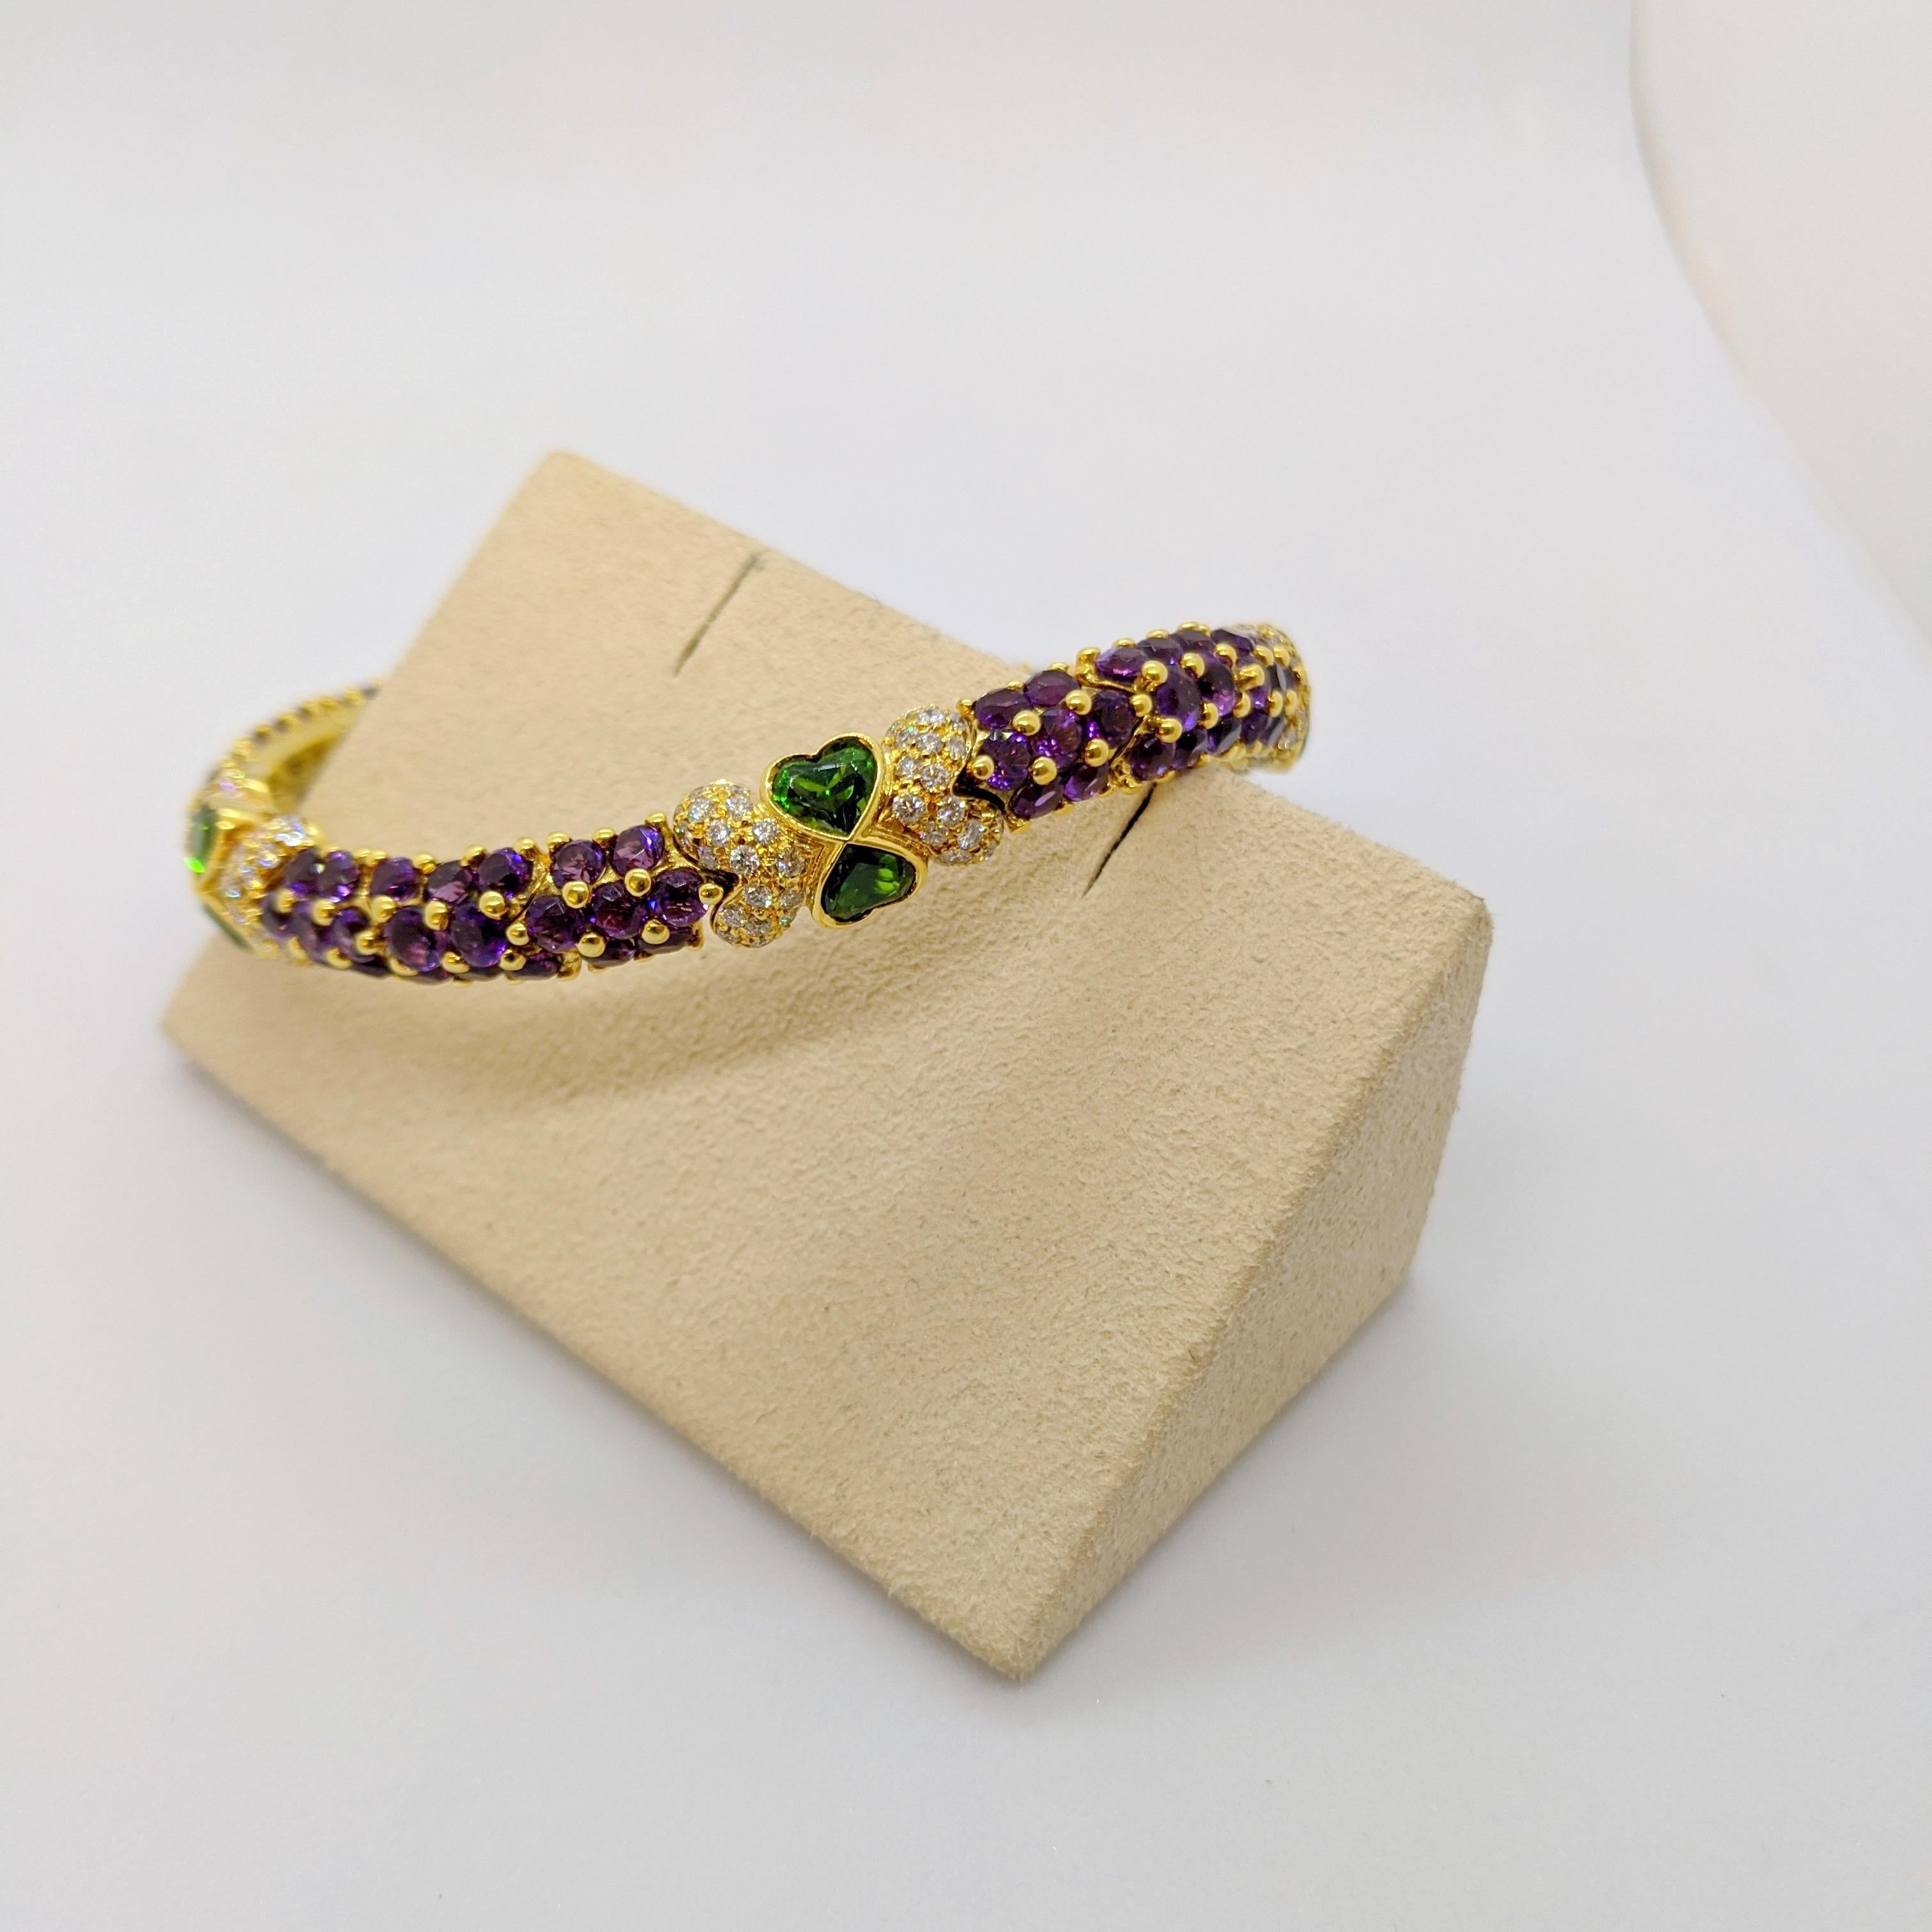 Ce bracelet a été conçu par G. Verdi en Italie. Les pierres d'améthyste rondes et brillantes sont serties dans des griffes en or jaune 18 carats qui donnent un bel effet perlé. Des diamants ronds et brillants et des tsavorites en forme de cœur se